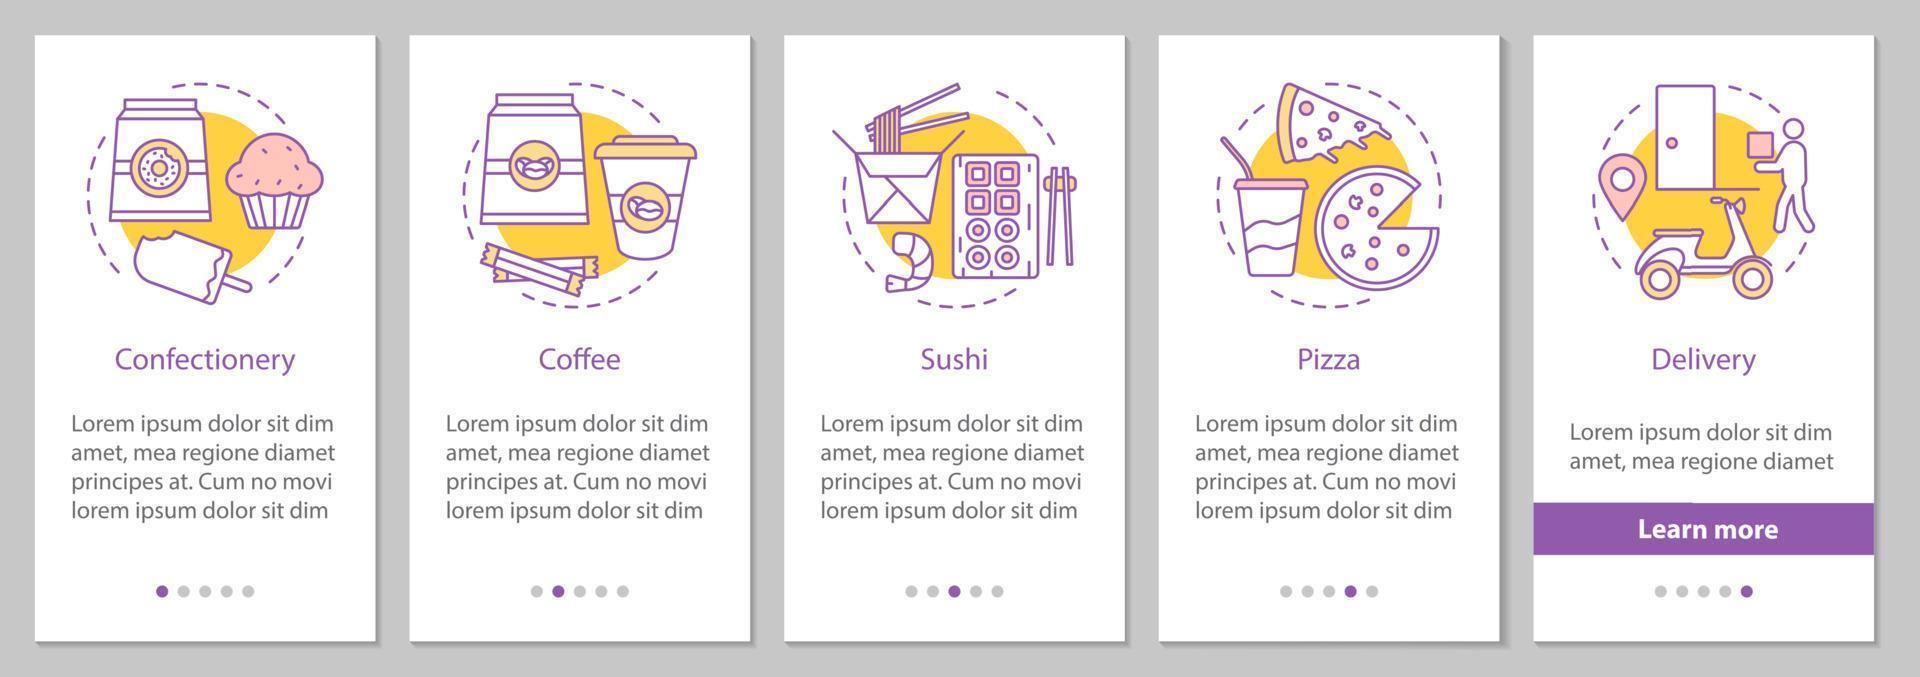 matleverans onboarding mobil app sidskärm med linjära koncept. konfektyr, kaffe, sushi, pizza steg grafiska instruktioner. ux, ui, gui vektormall med illustrationer vektor